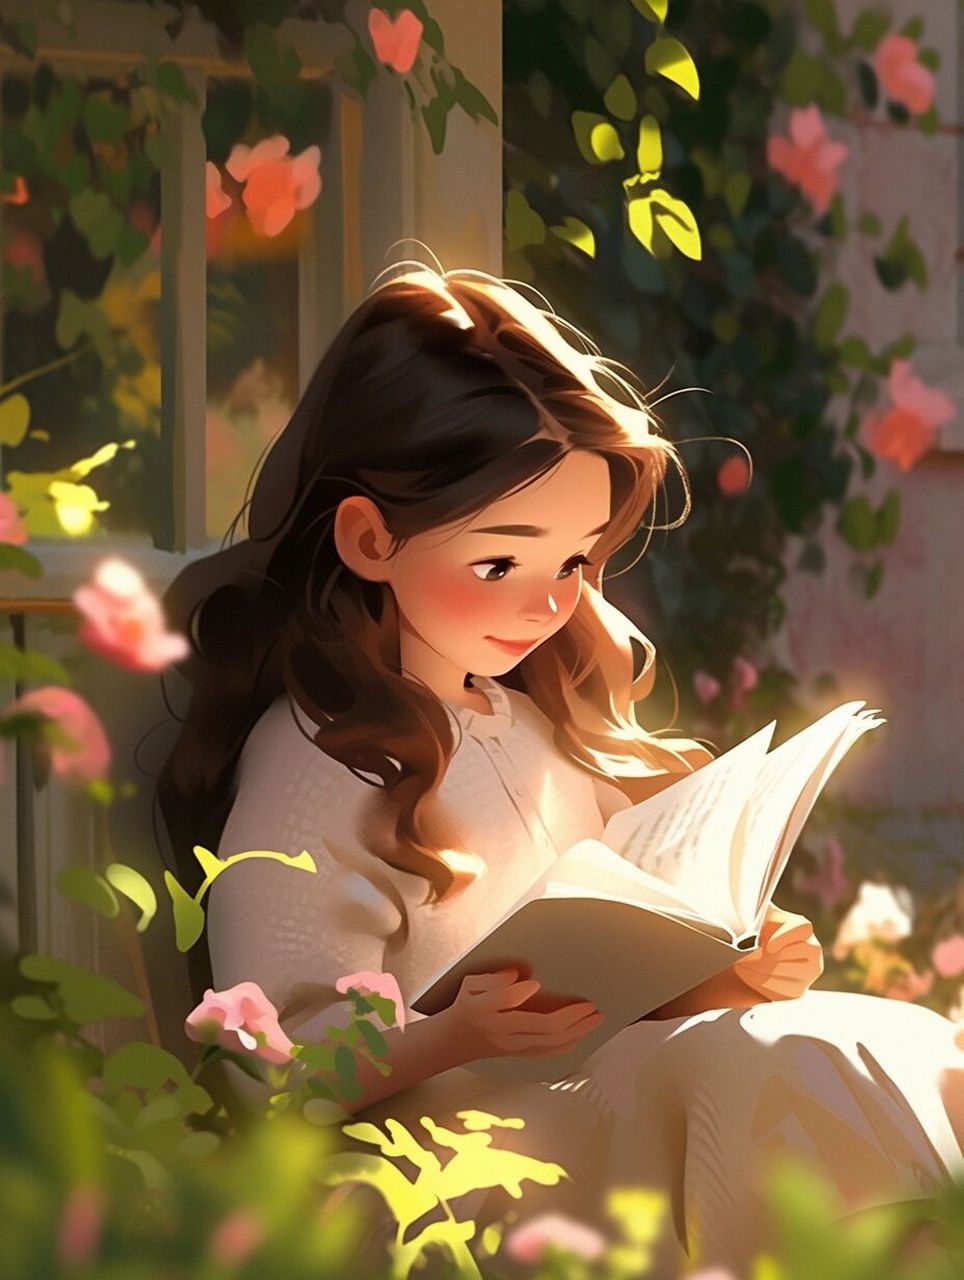 98那些爱看书的女生头像98看会书 晒会太阳 送给爱看书的女孩子们